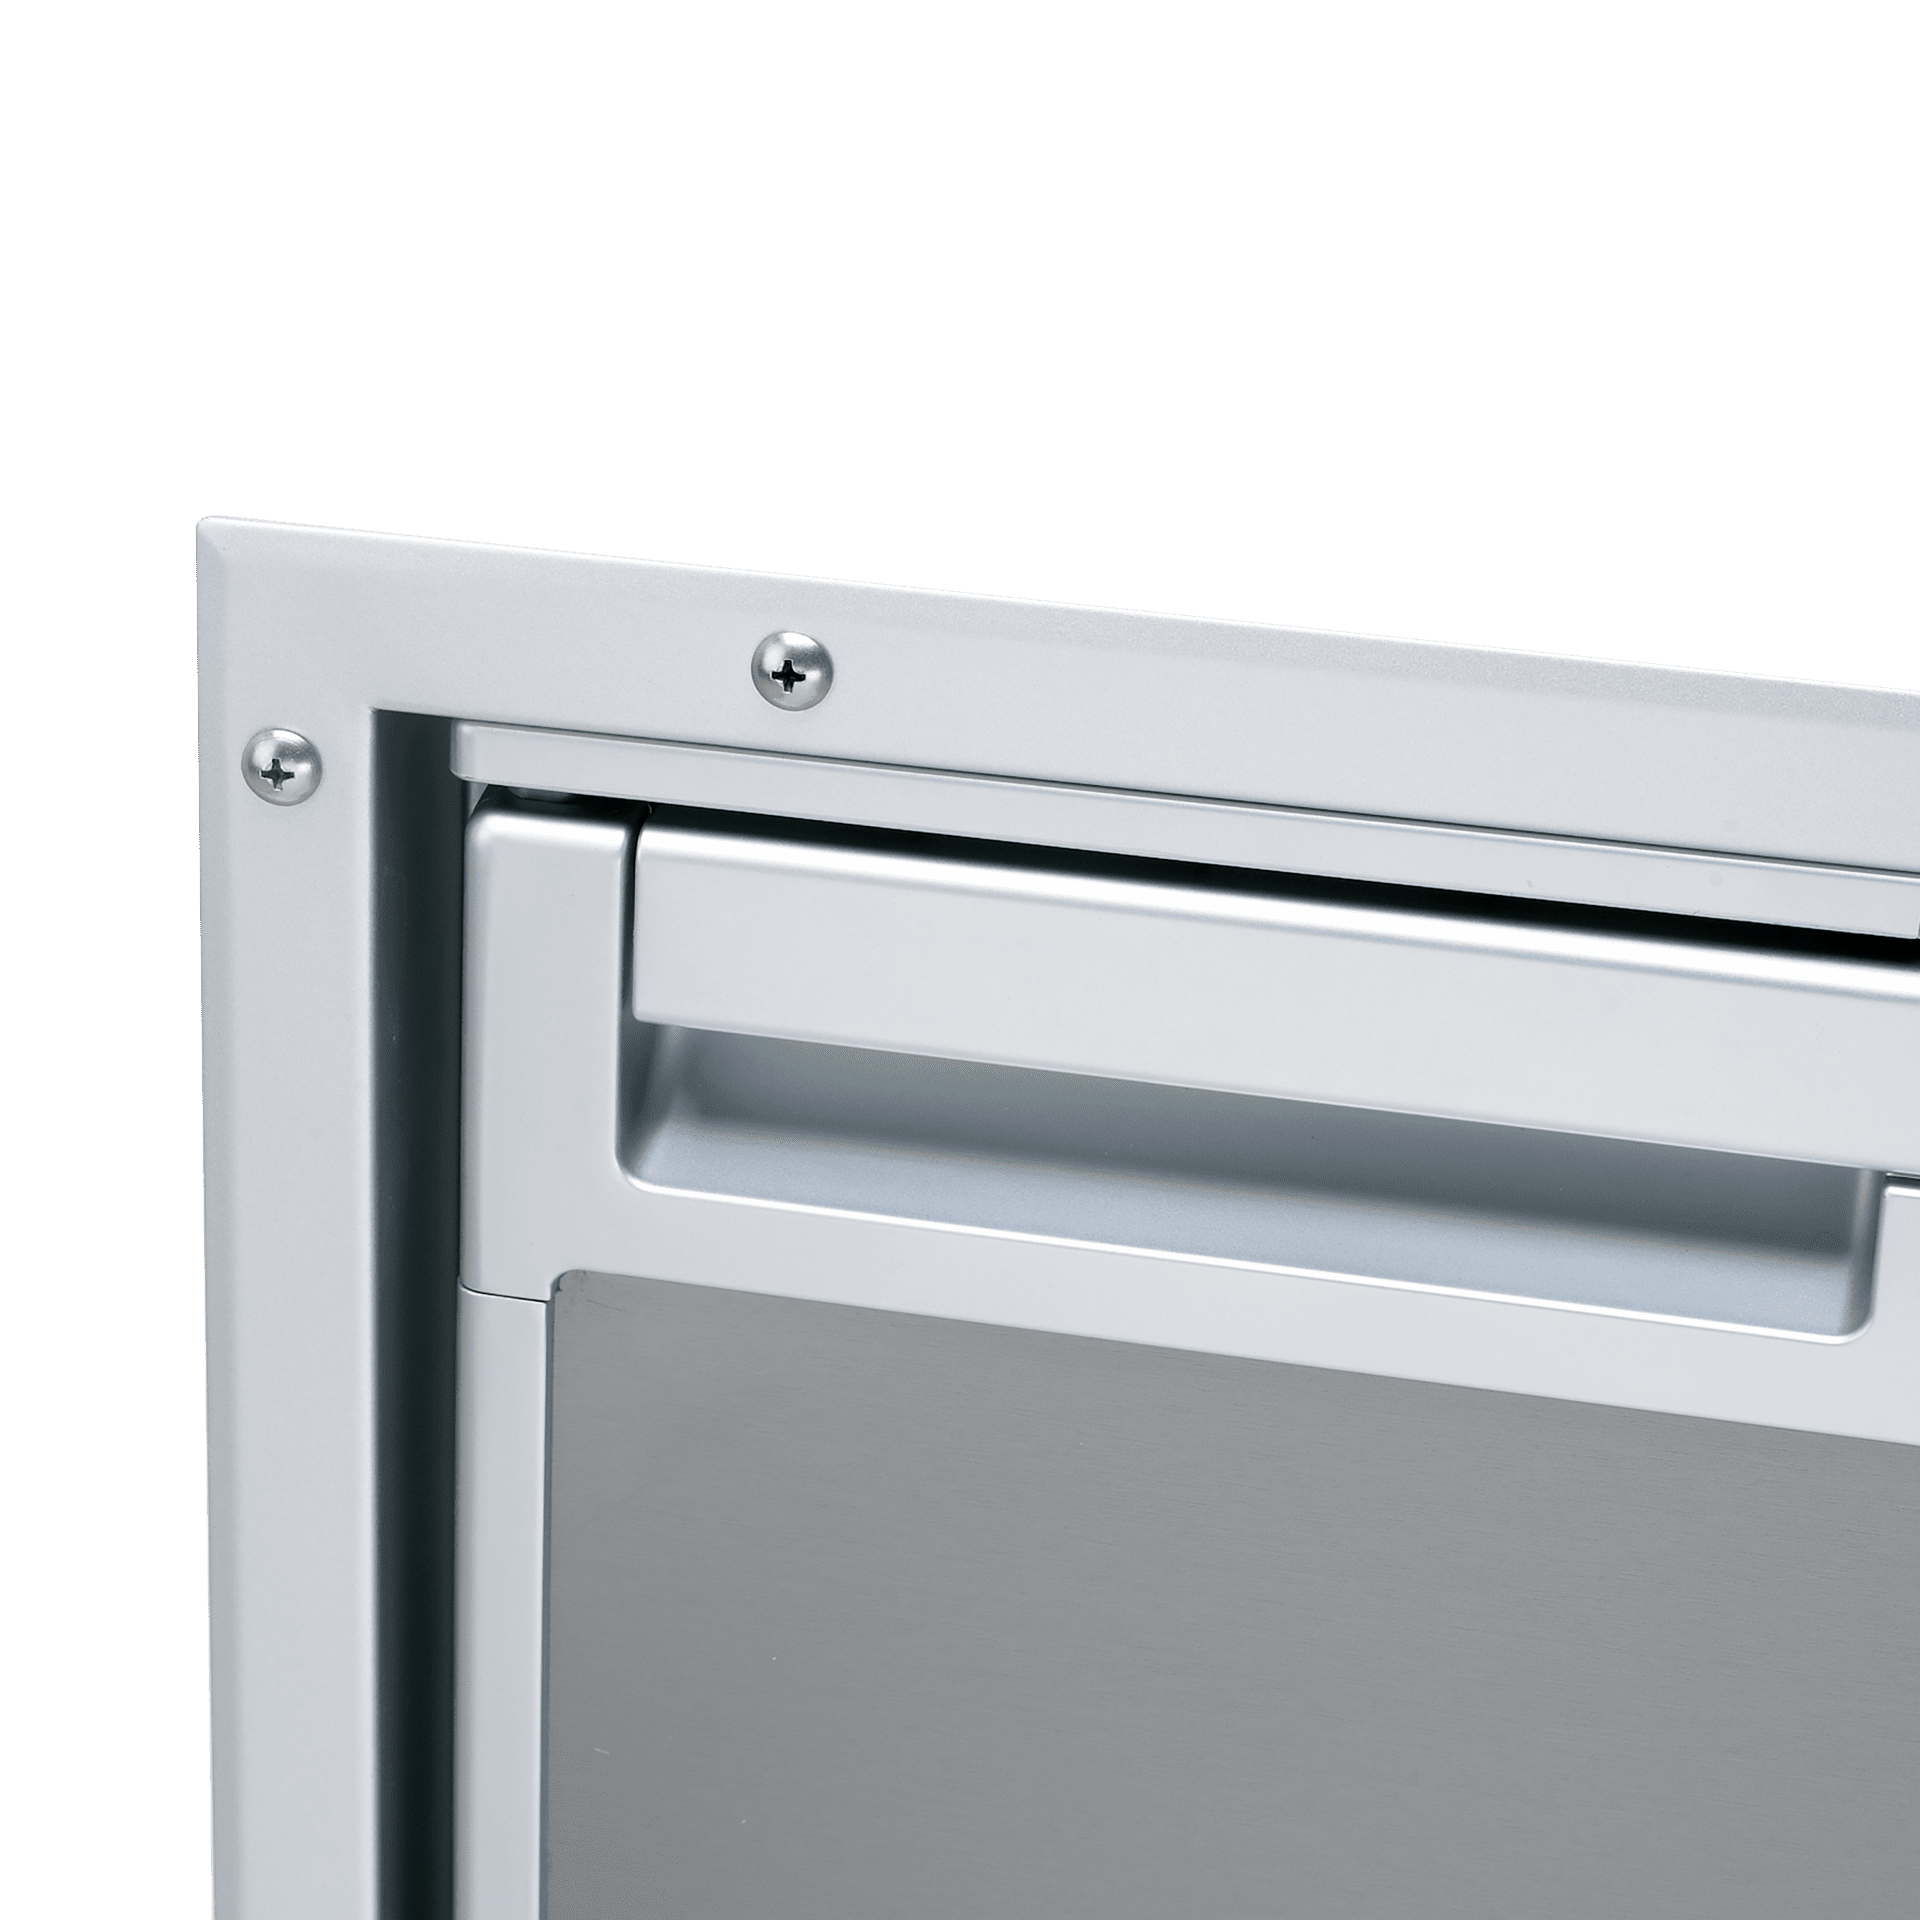 Ricambi frigorifero Dometic serie 8 mod.RMD 8555 Dx - Accessori